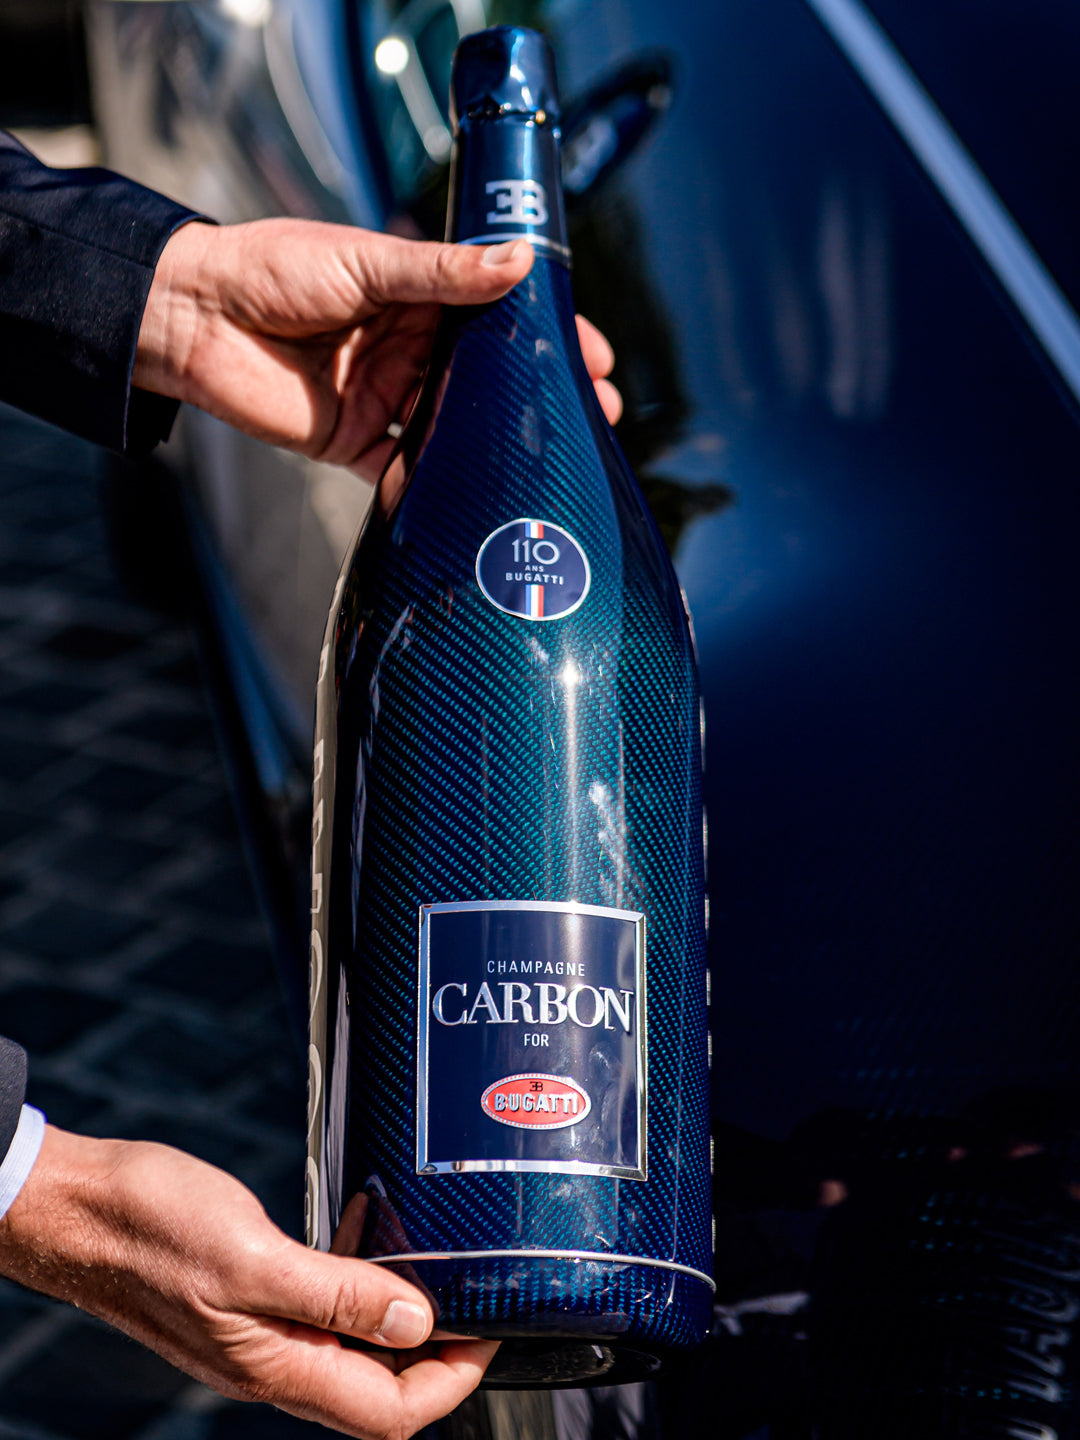 Bugatti Collection – Champagne Carbon USA